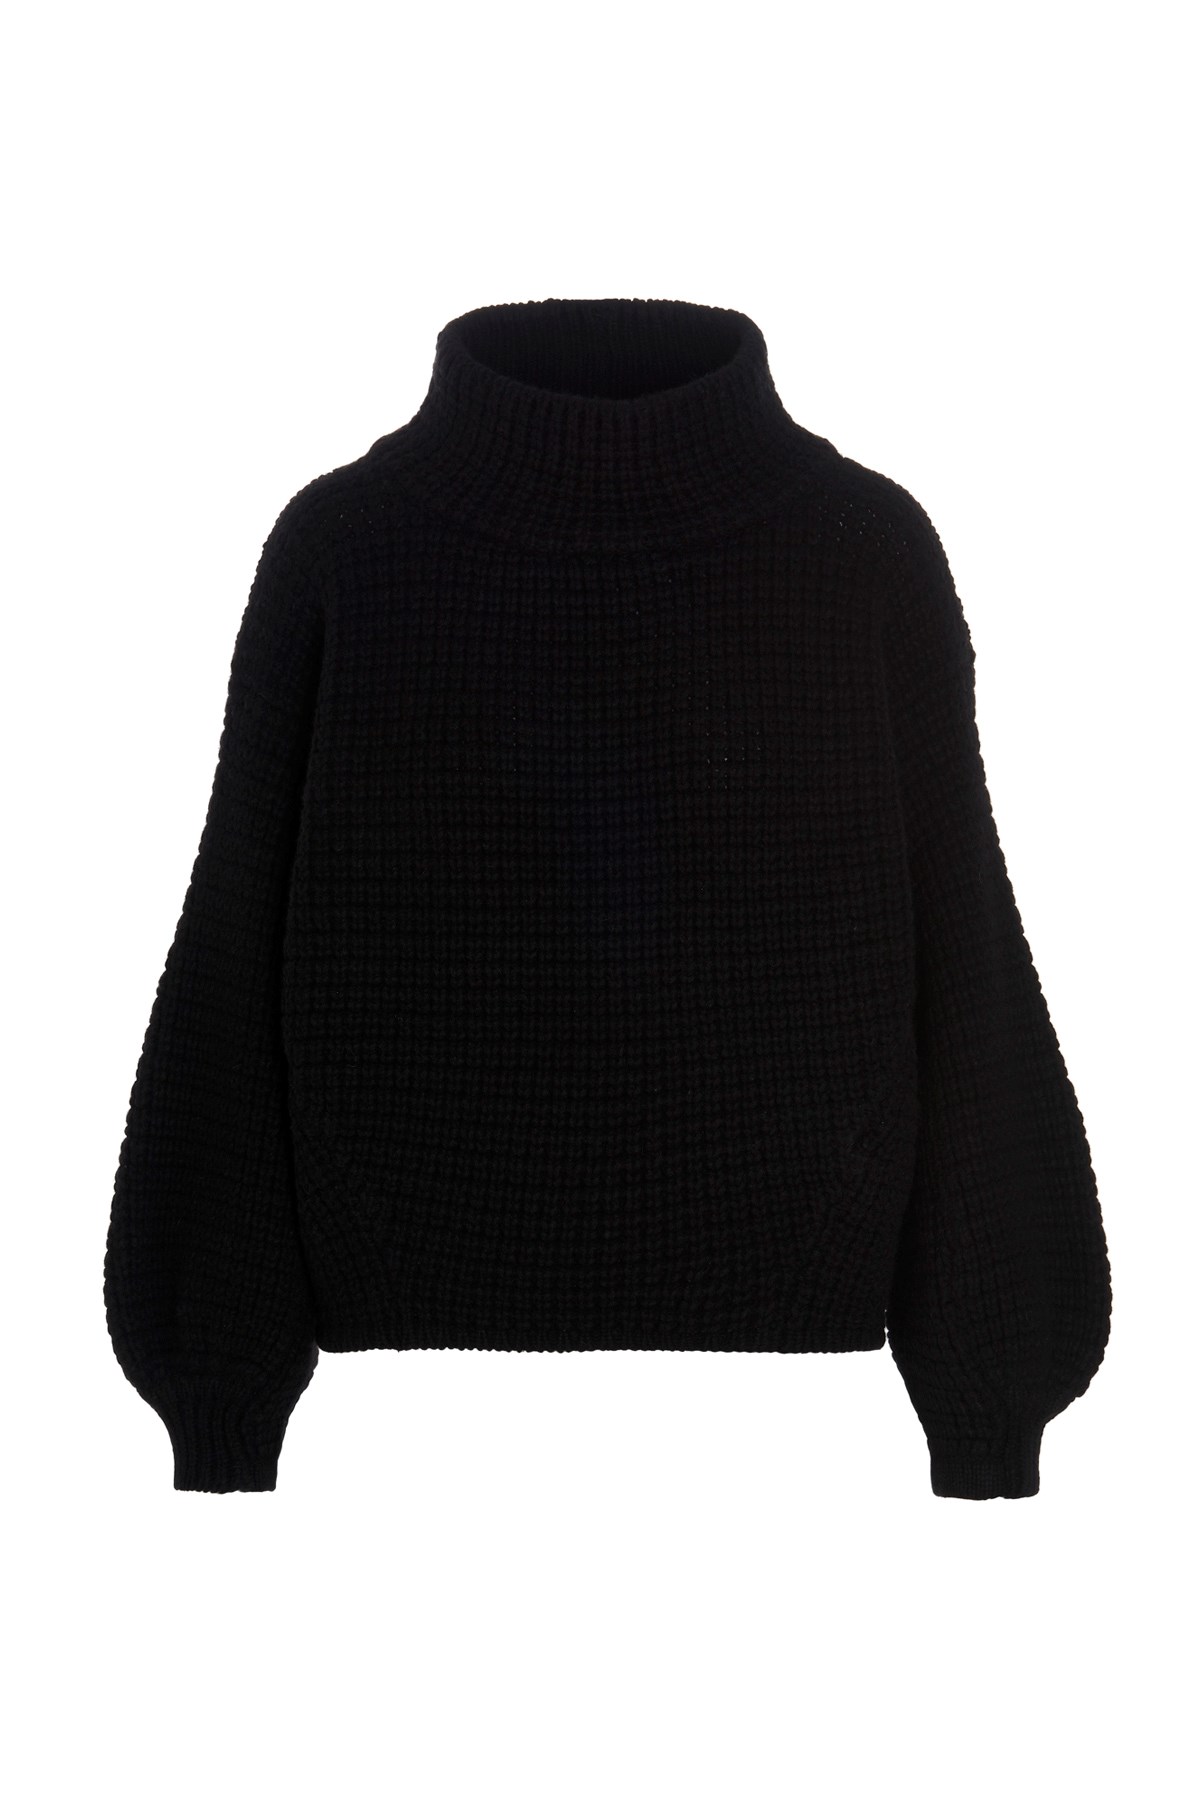 KNIIT MILANO 'Rubens Eco’ Sweater